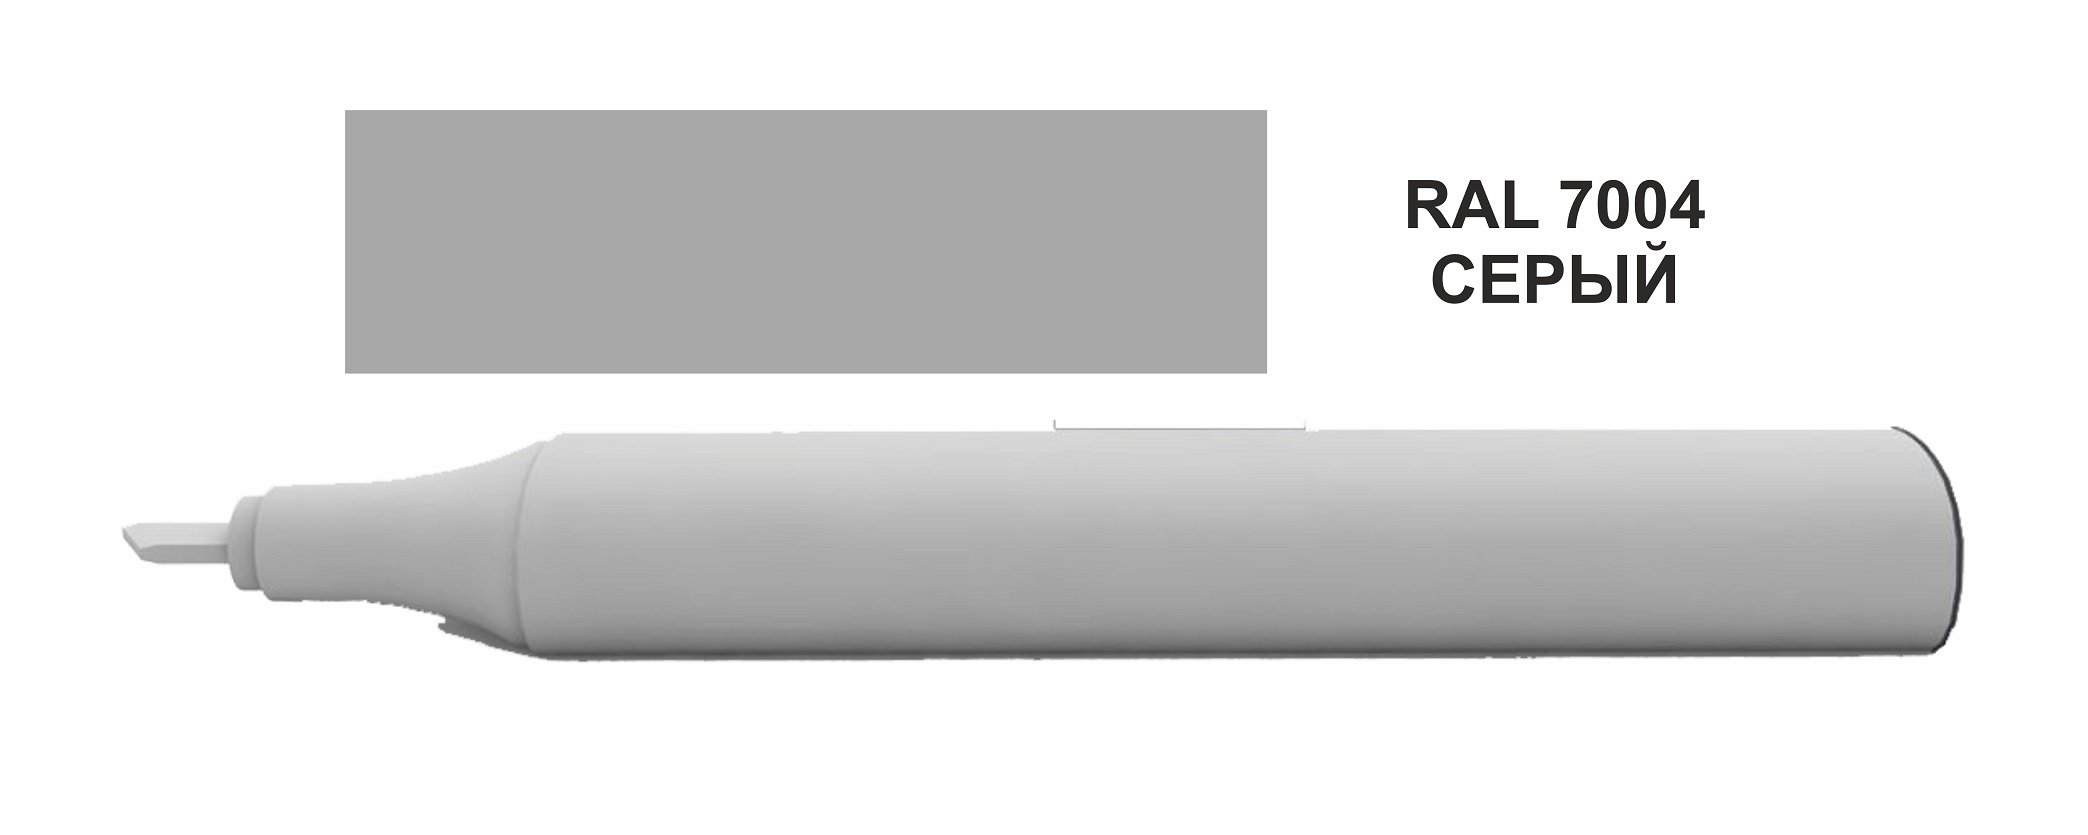 Корректор для ремонта царапин, цвет серый (RAL 7004)